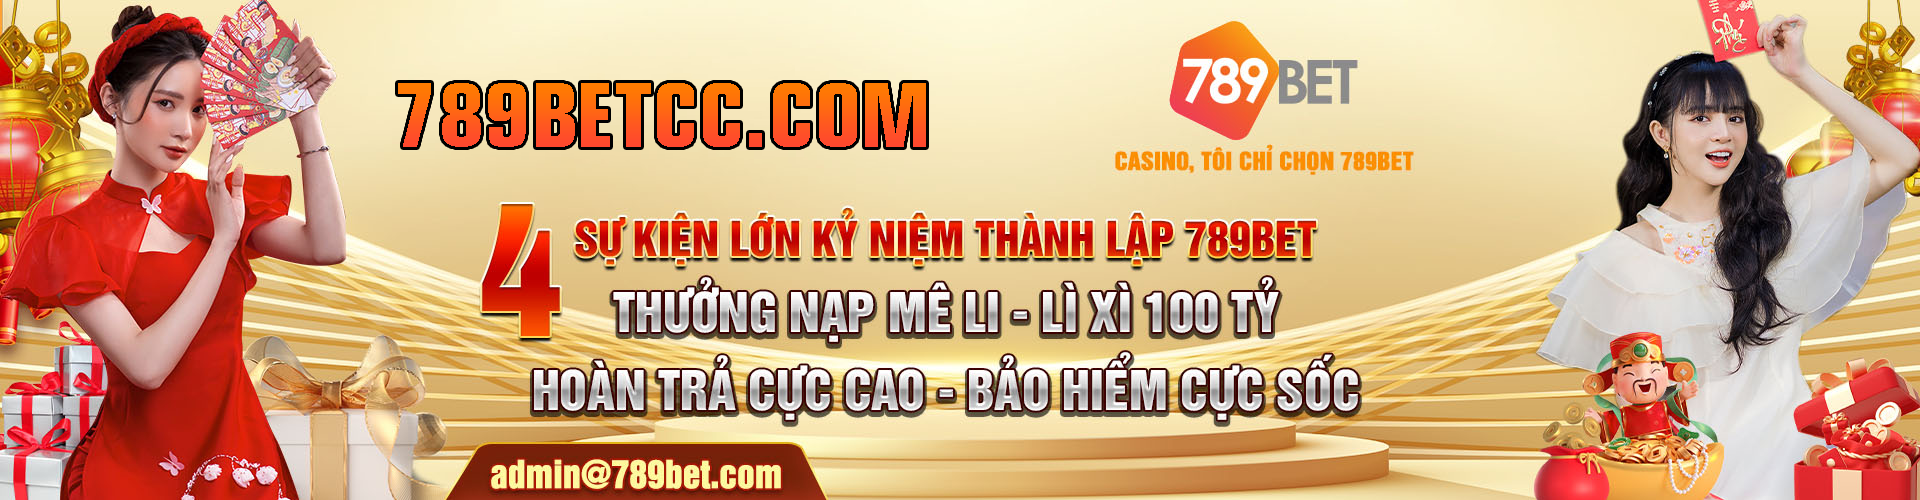 789BET - Nhà cái 789BET cá cược thể thao #1 Việt Nam, Link 789BET mới nhất